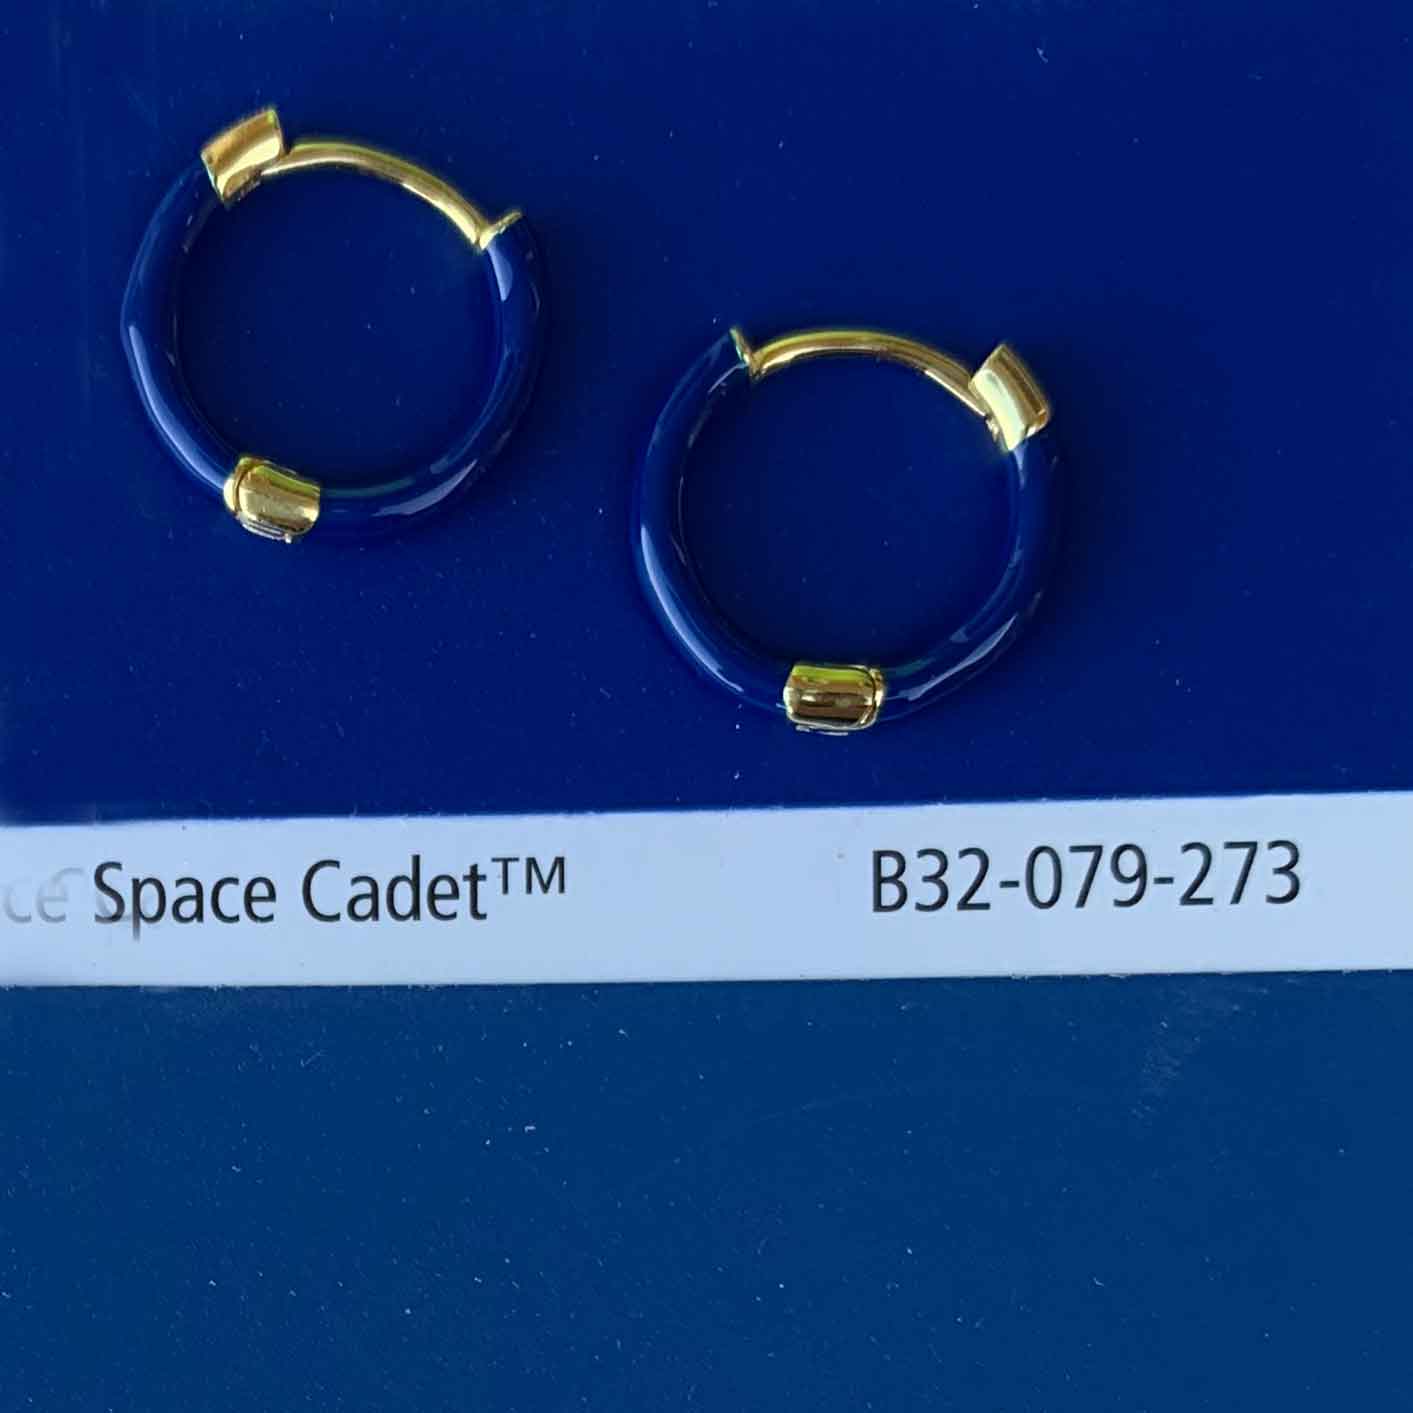 blue gold hoop earring jewellery for women